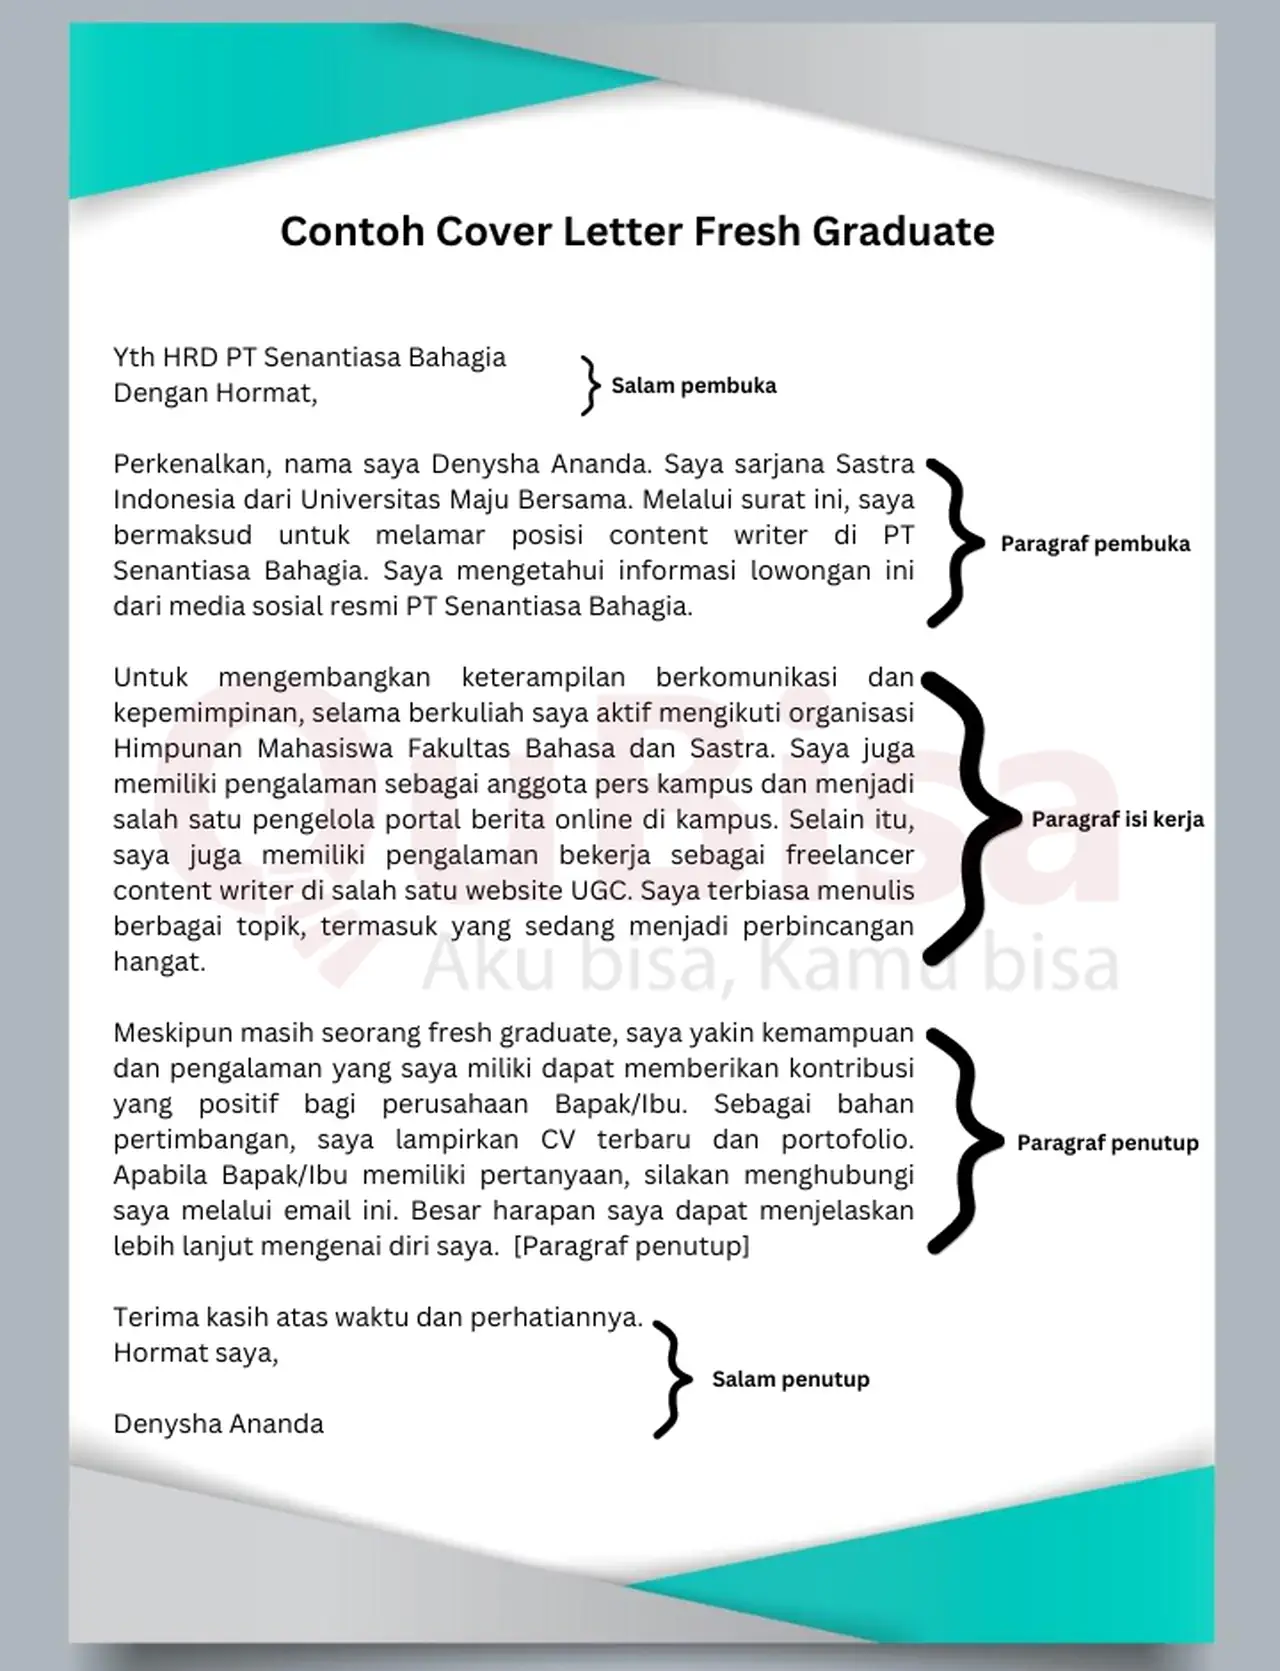 Contoh Cover Letter untuk Fresh Graduate